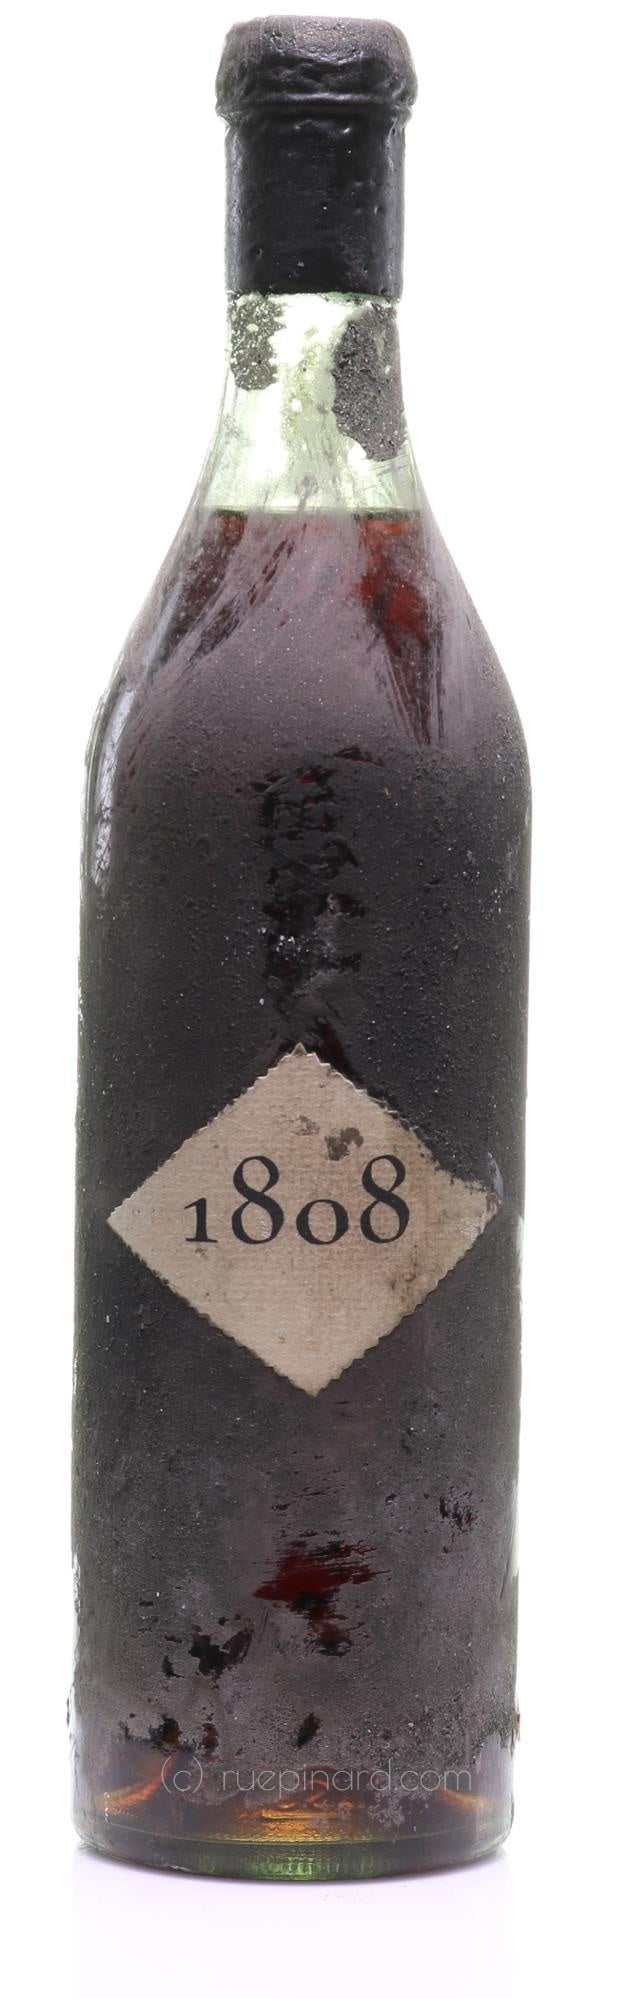 Albert Robin Cognac 1808 Vintage - Rue Pinard